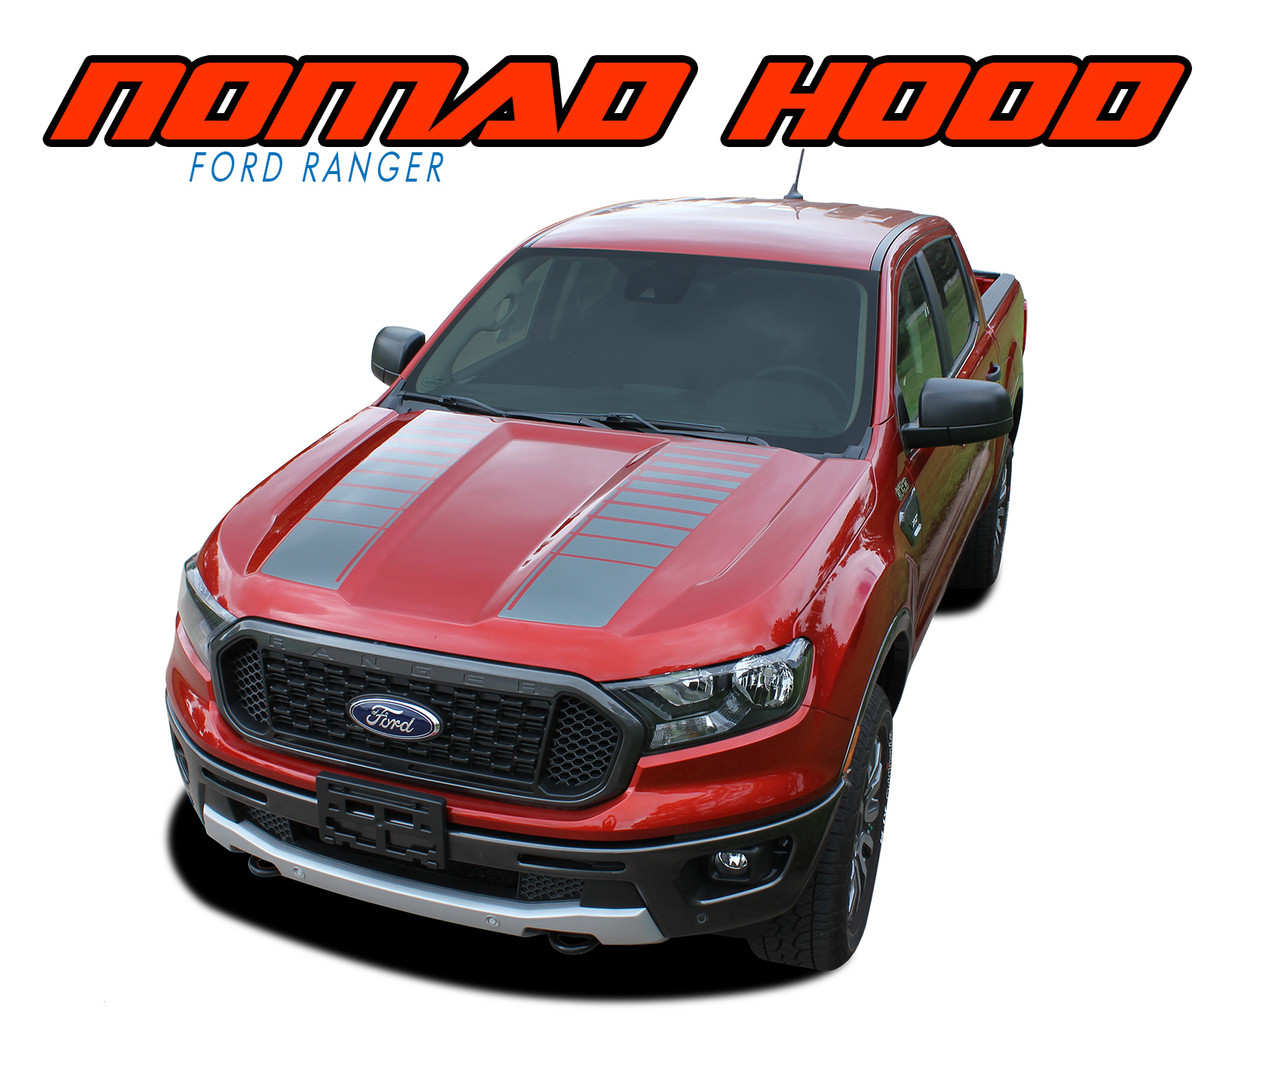 Ford Ranger T) Sticker kits!!!!  Ford ranger, Ford ranger wildtrak, Ranger